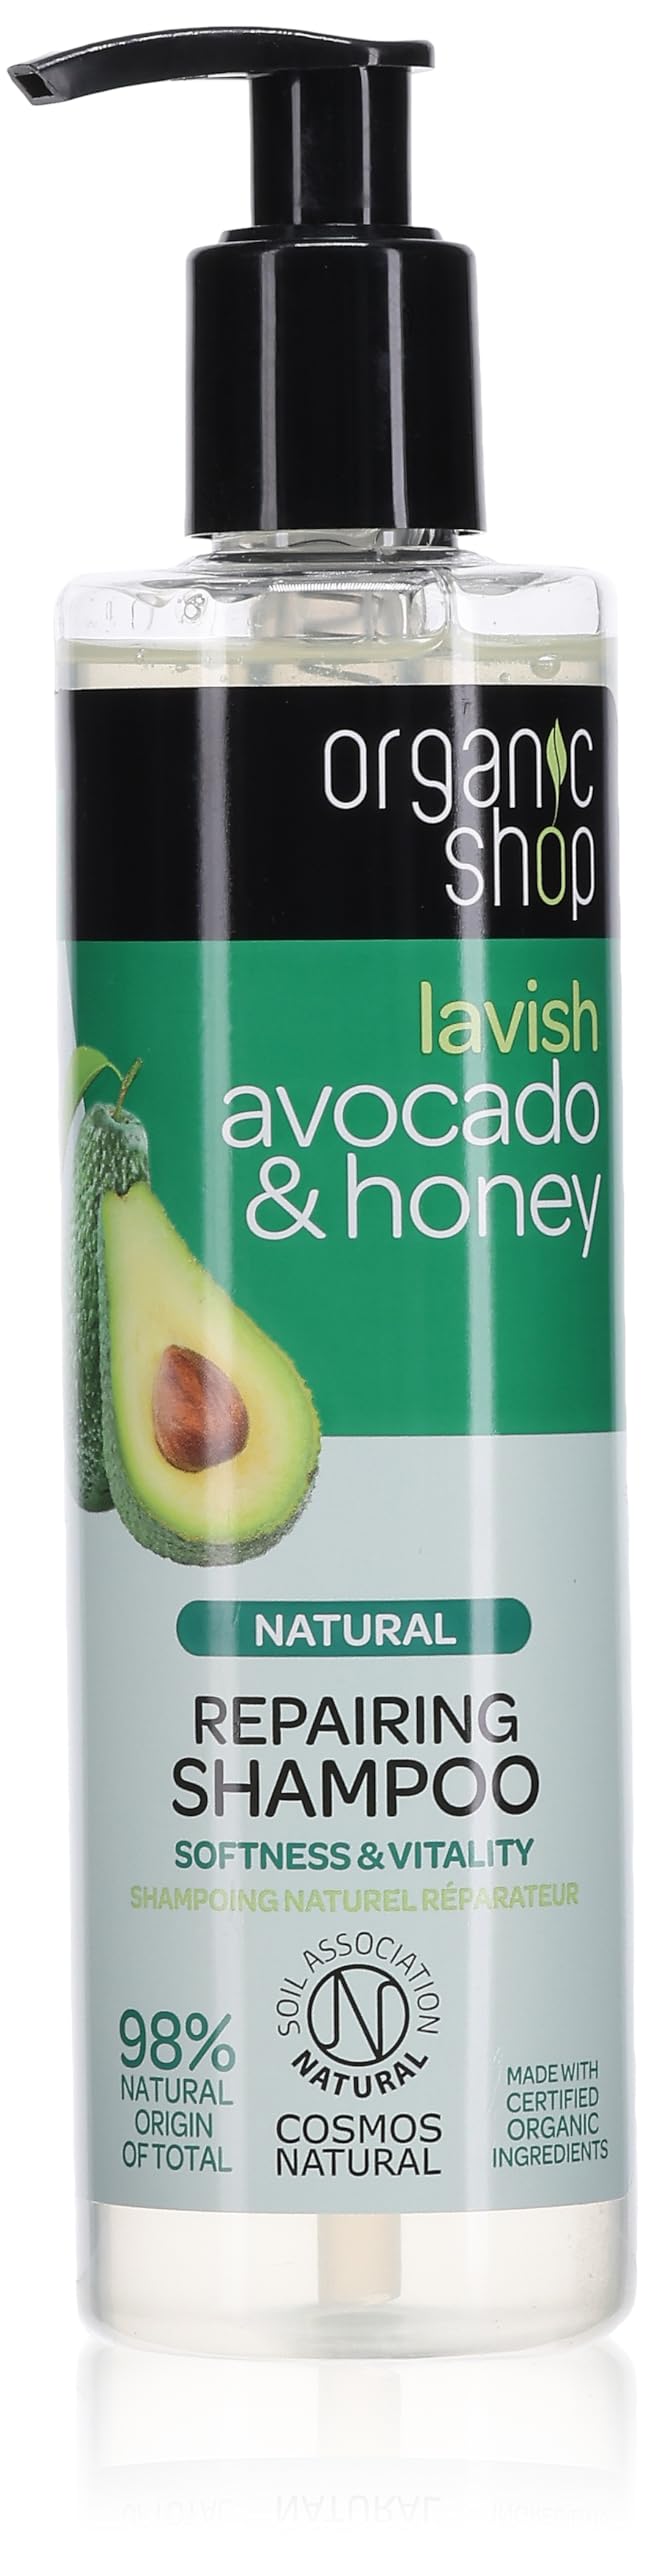 organic shop szampon avocado